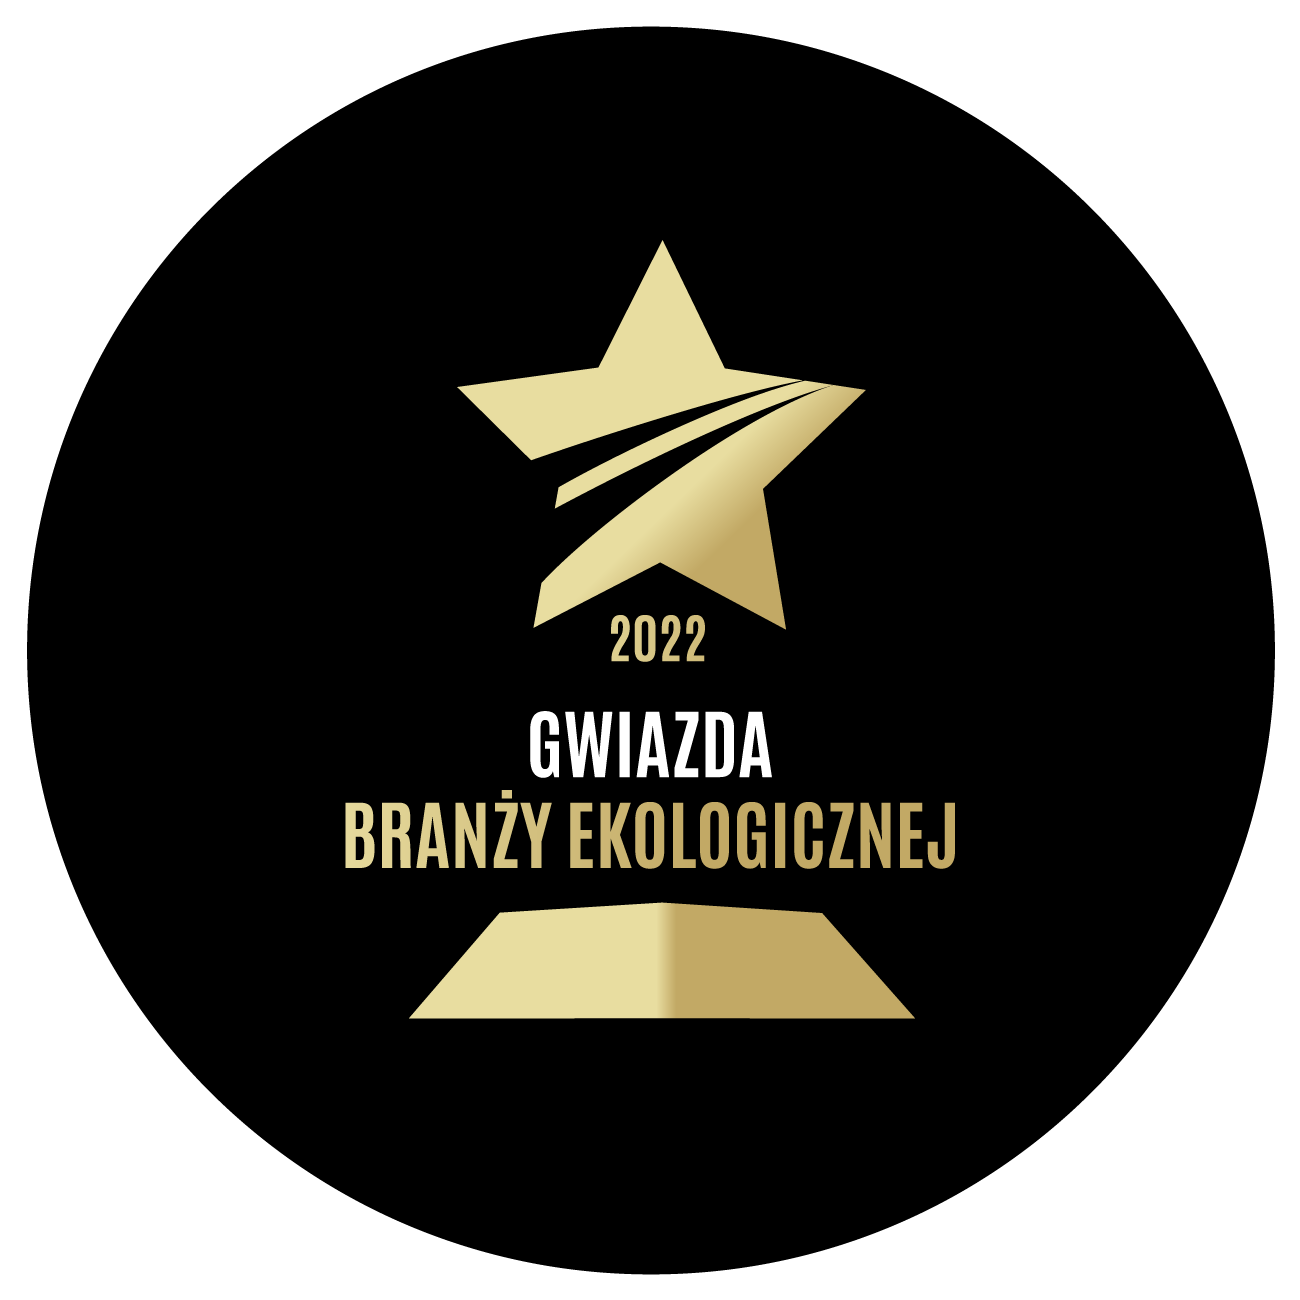 logo gwiazda branzy ekologicznej 2022 - Seite Home